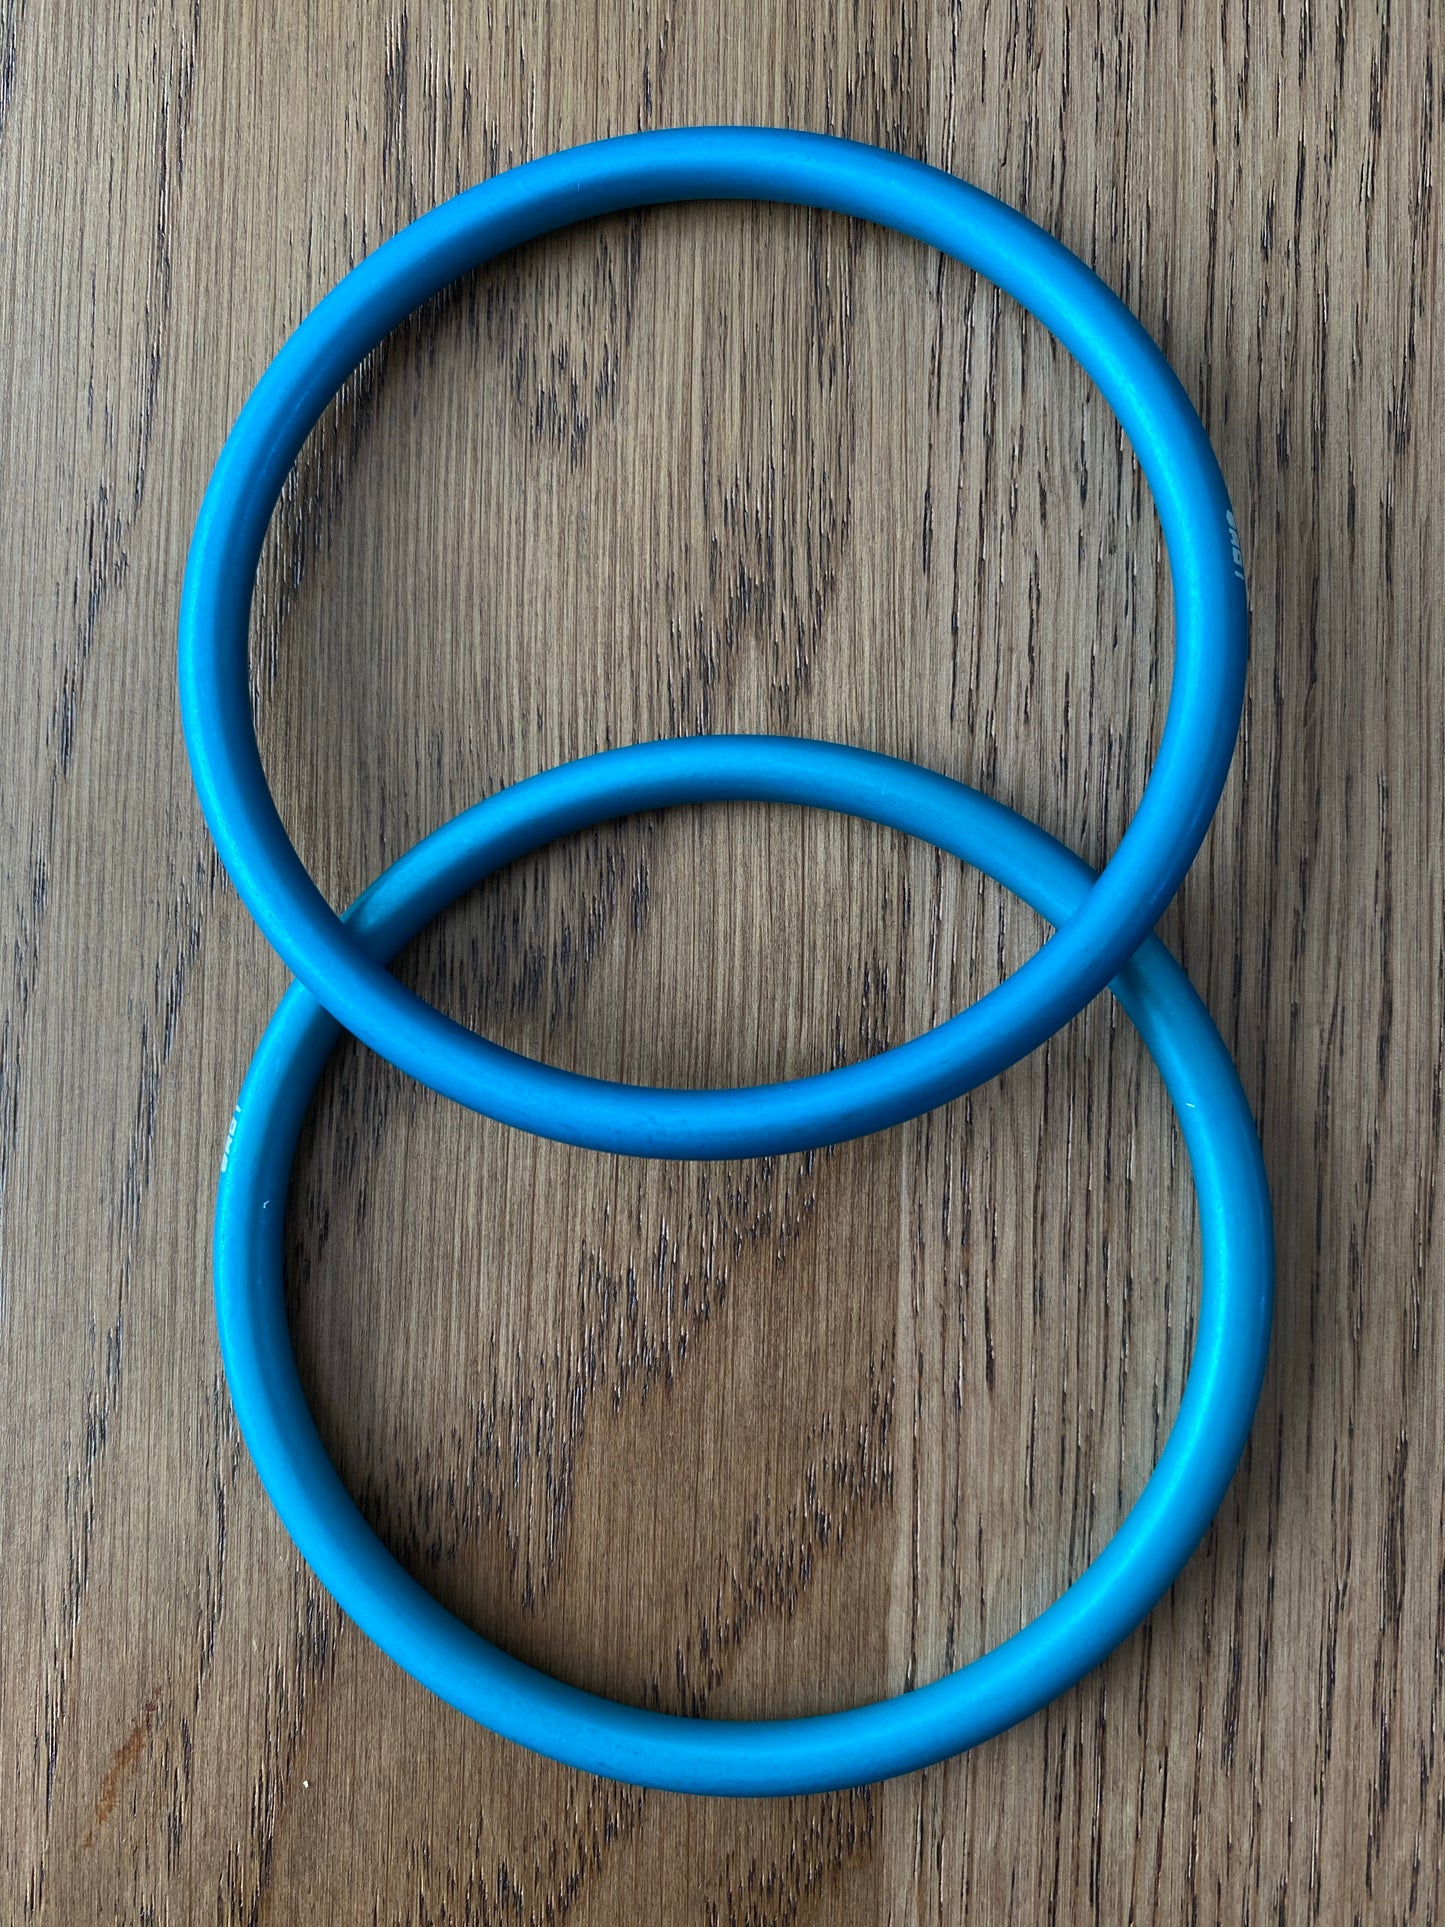 Large Aluminum Sling Ring- Turquoise - Rebozo Shop Lola My Love